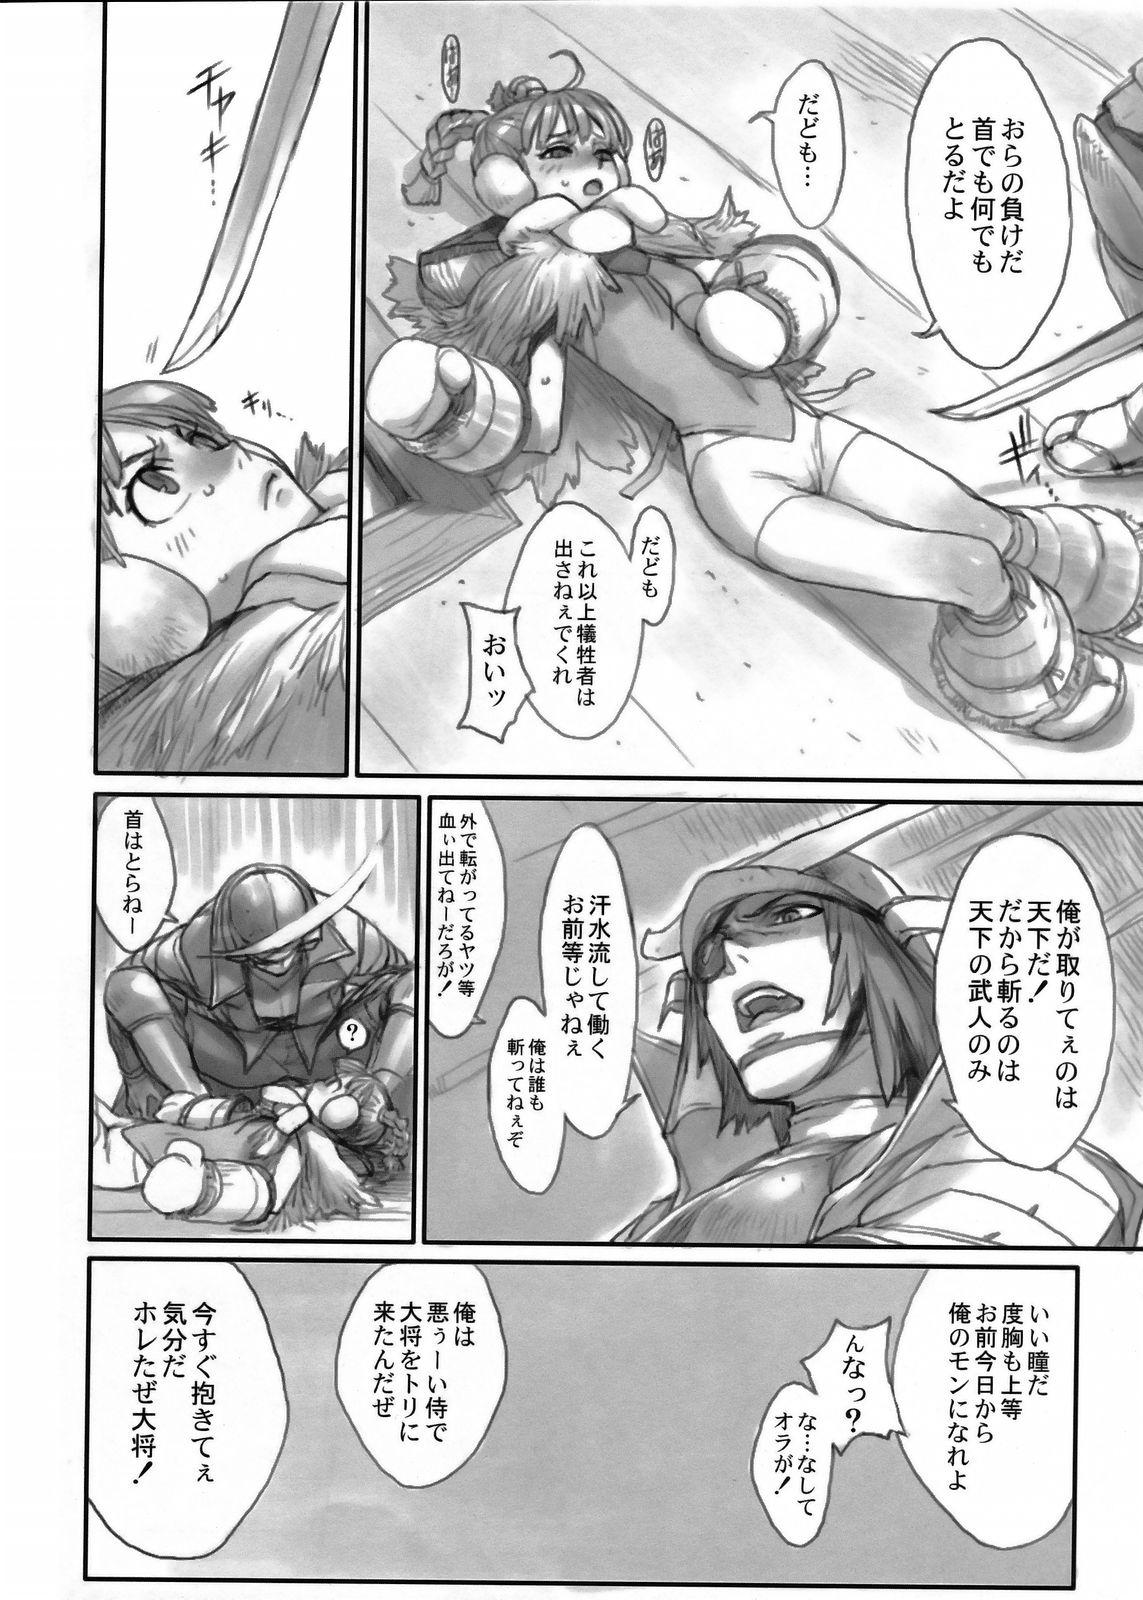 Huge Cock Sengoku Basara - Sengoku basara Men - Page 7